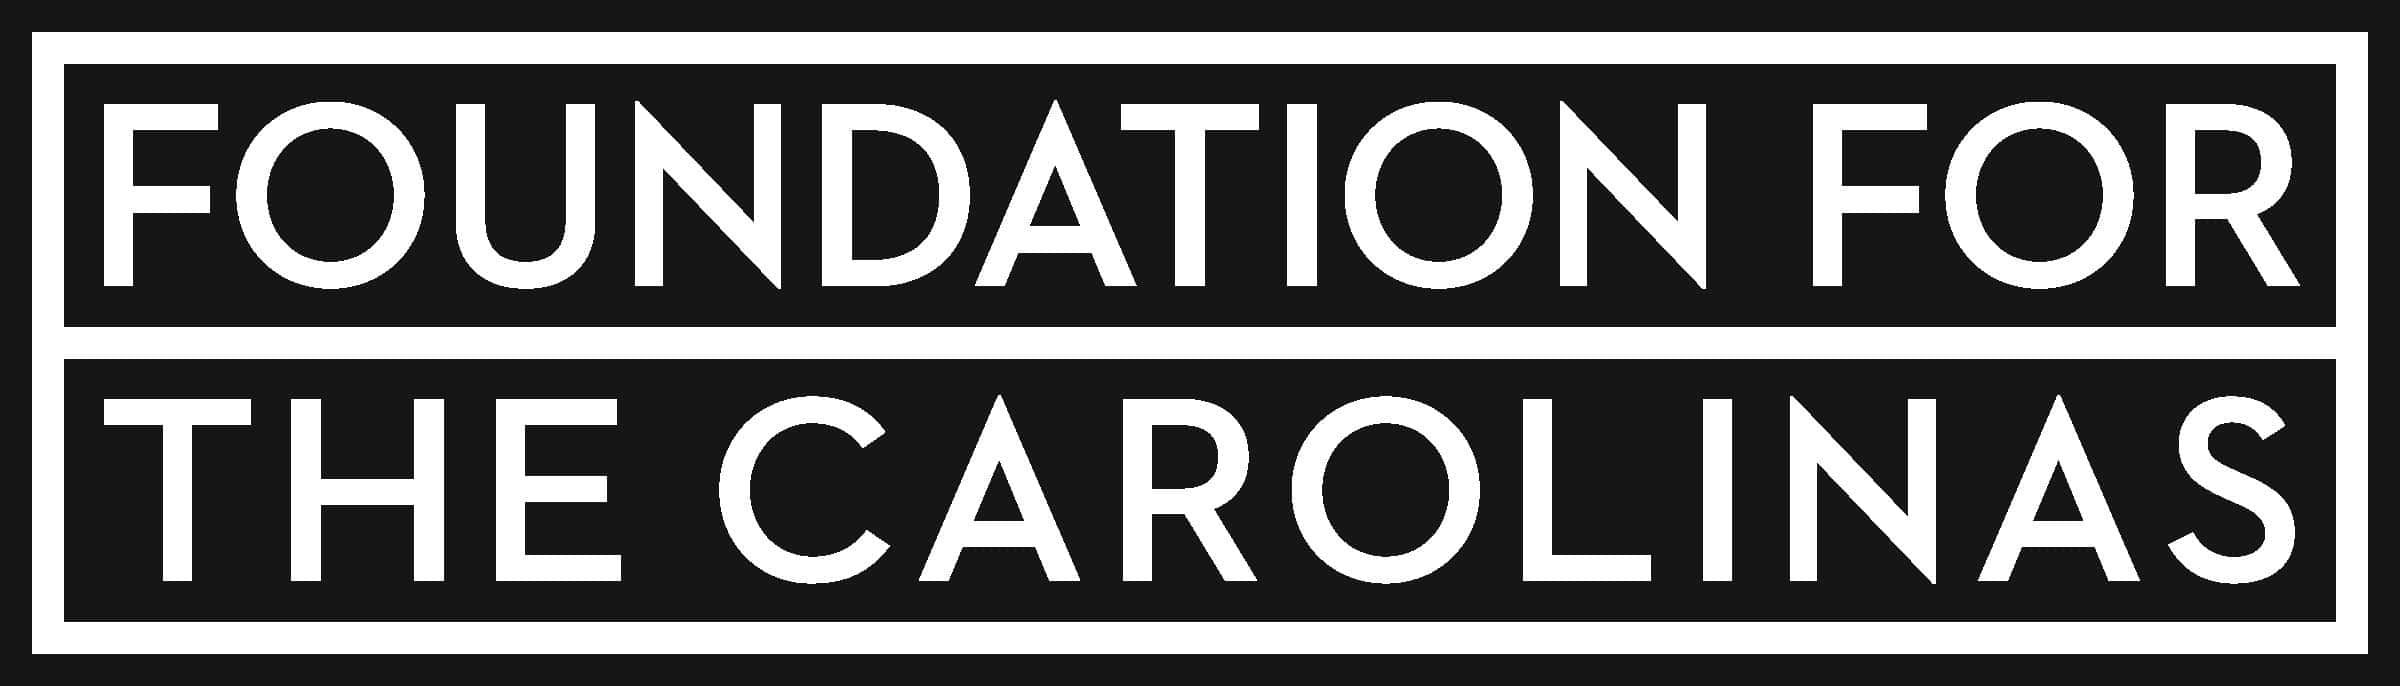 Image result for foundation for the carolinas logo